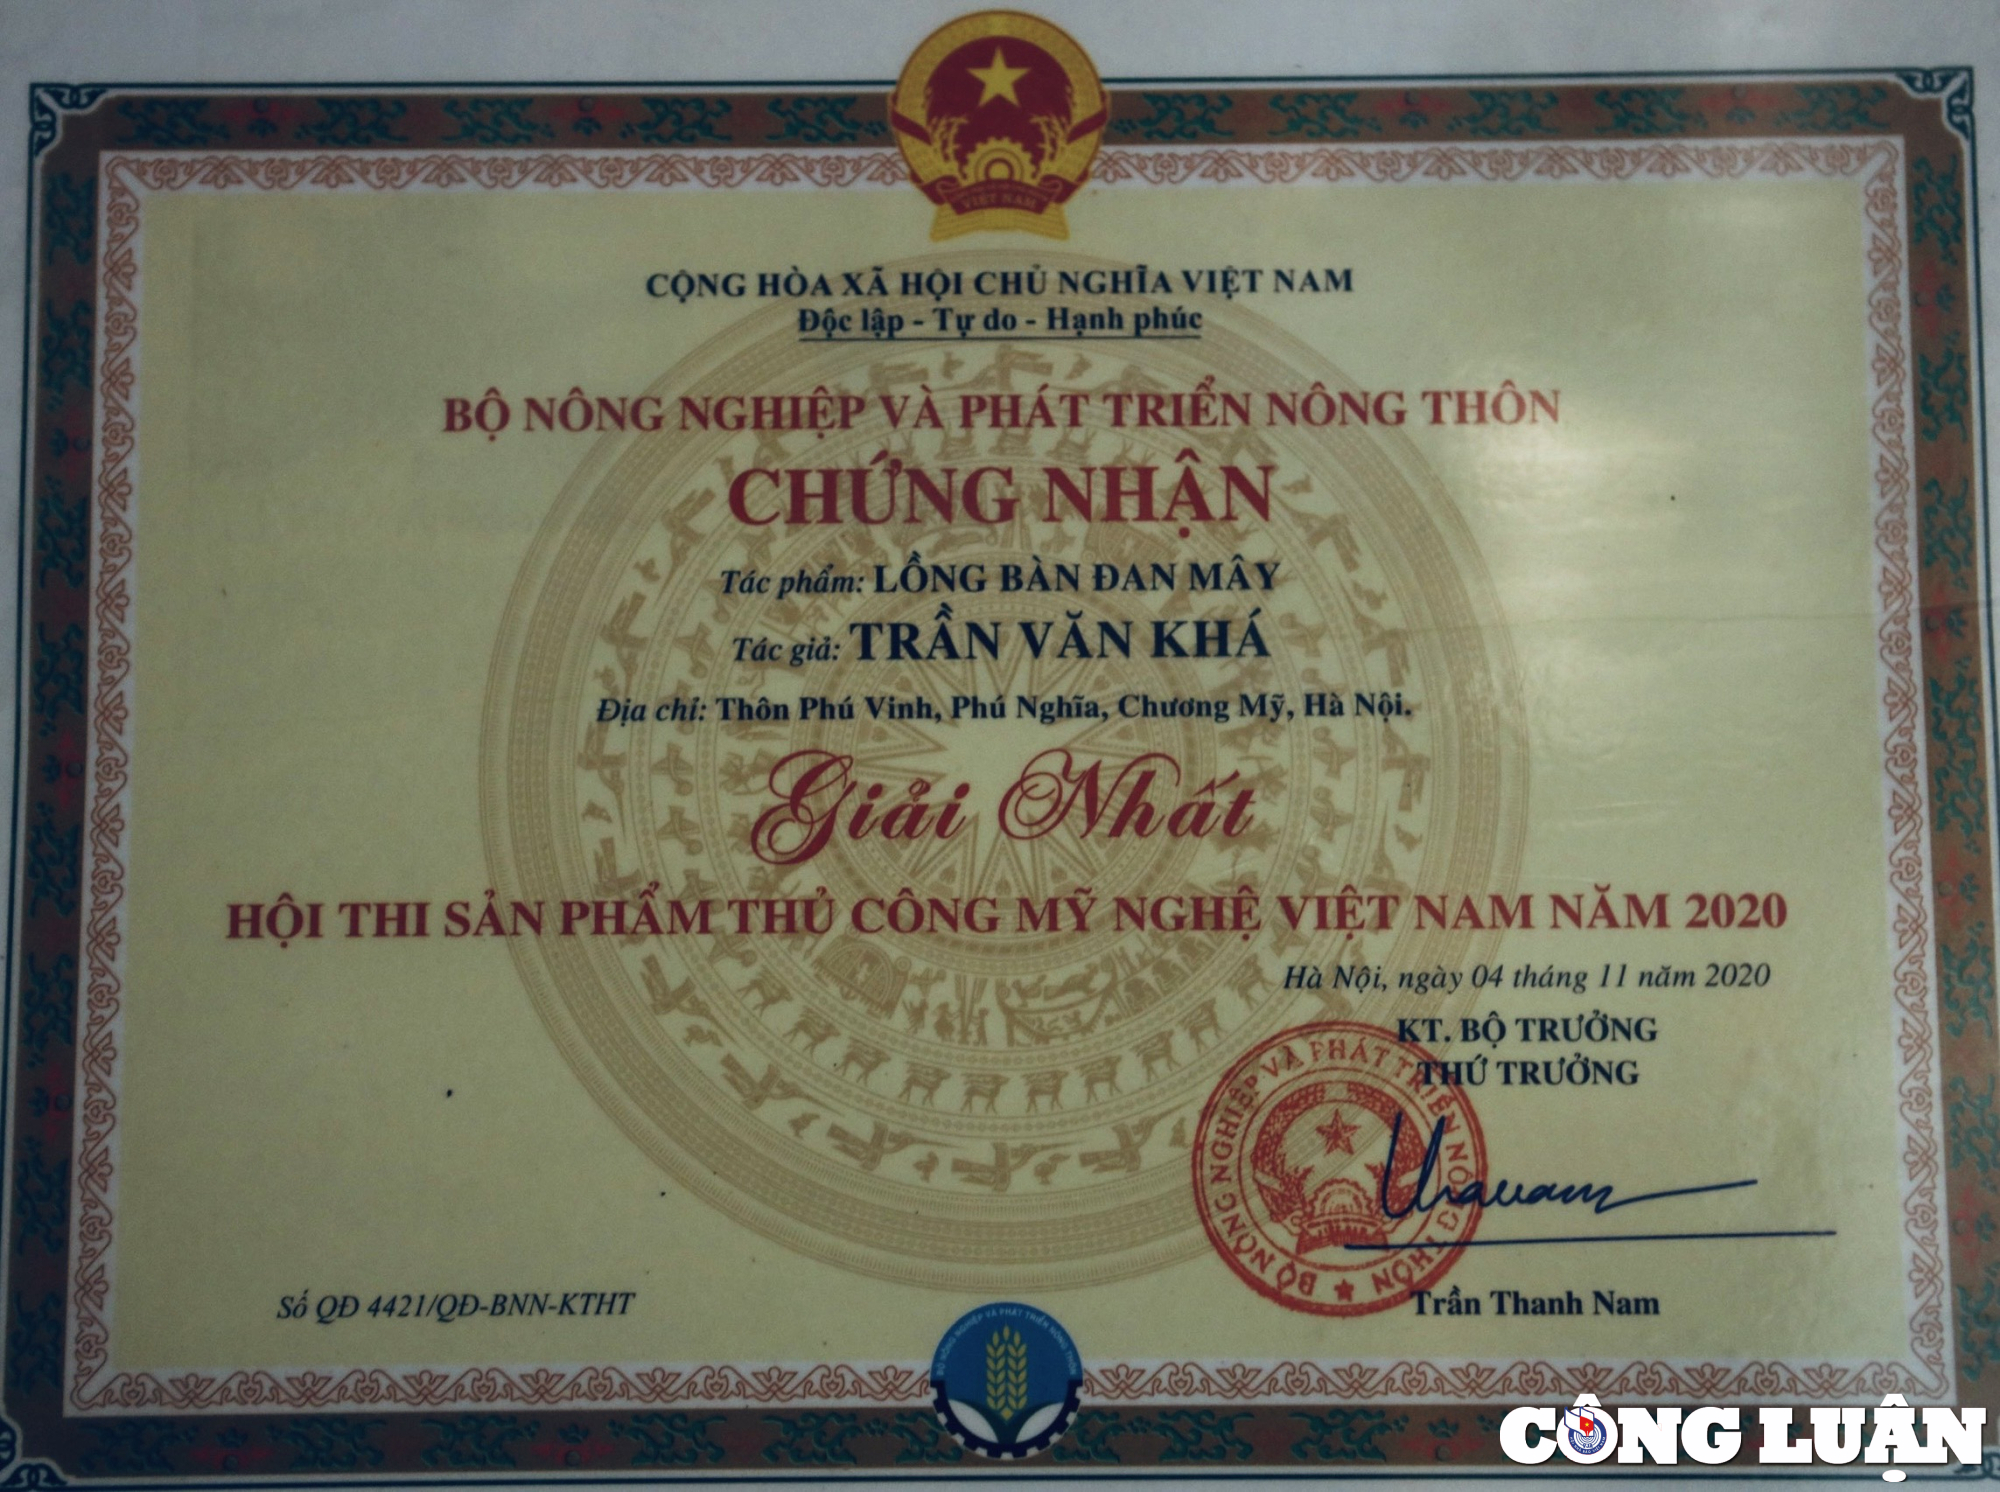 Giấy chứng nhận sản phẩm Lồng bàn đan Mây đoạt giải Nhất Hội thi sản phẩm thủ công mỹ nghệ Việt Nam năm 2020 của vợ chông ông bà Khá Tiến.